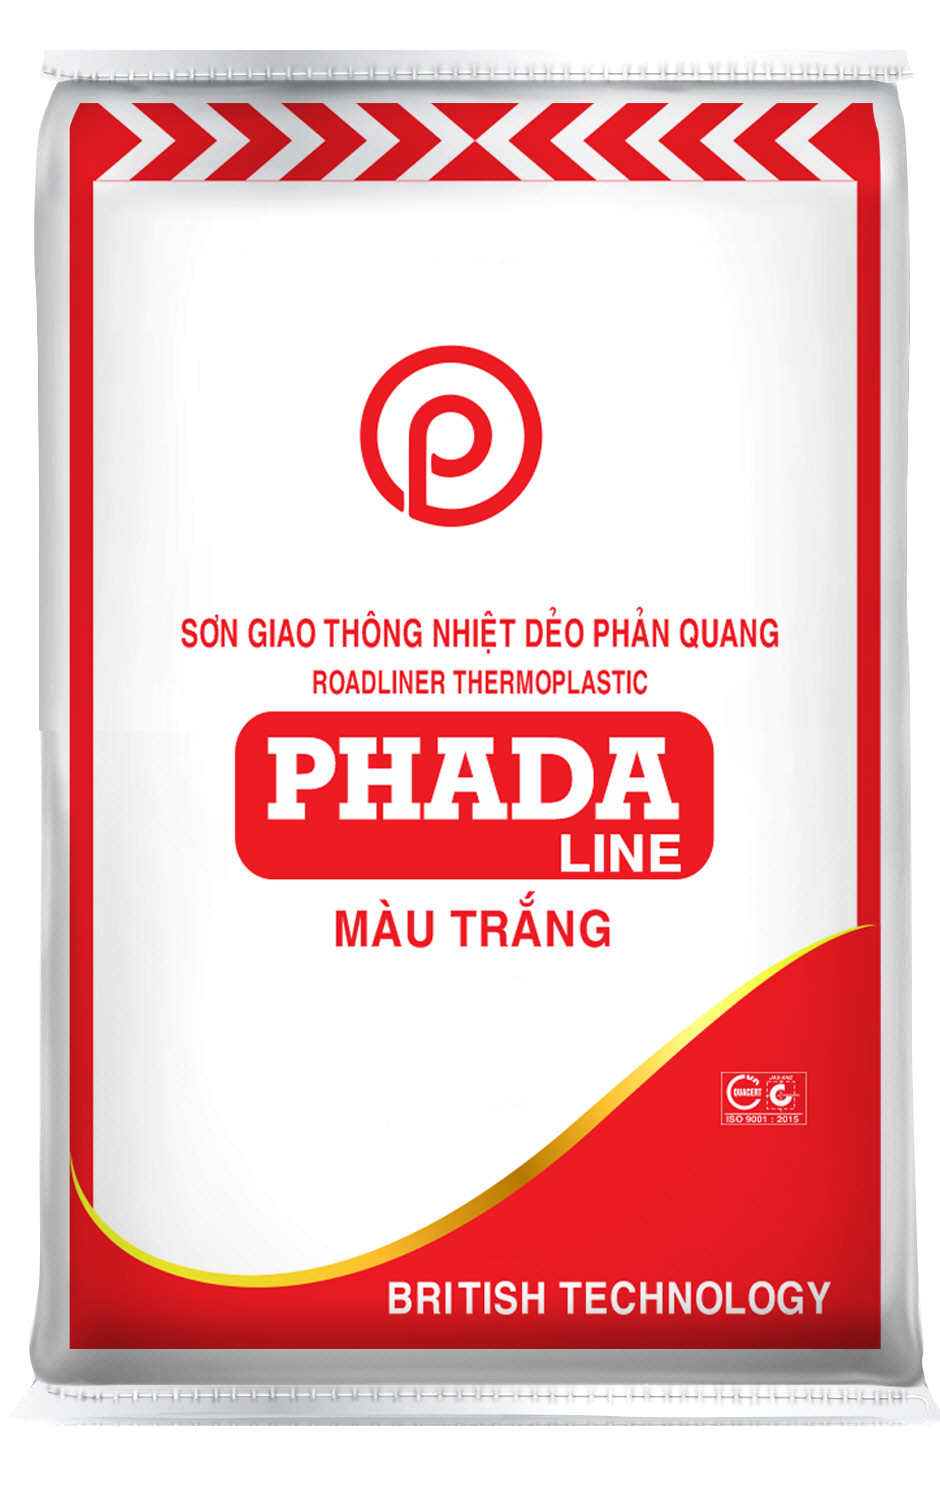 SƠN GIAO THÔNG NHIỆT DẺO PHẢN QUANG PHADA LINE - WHITE